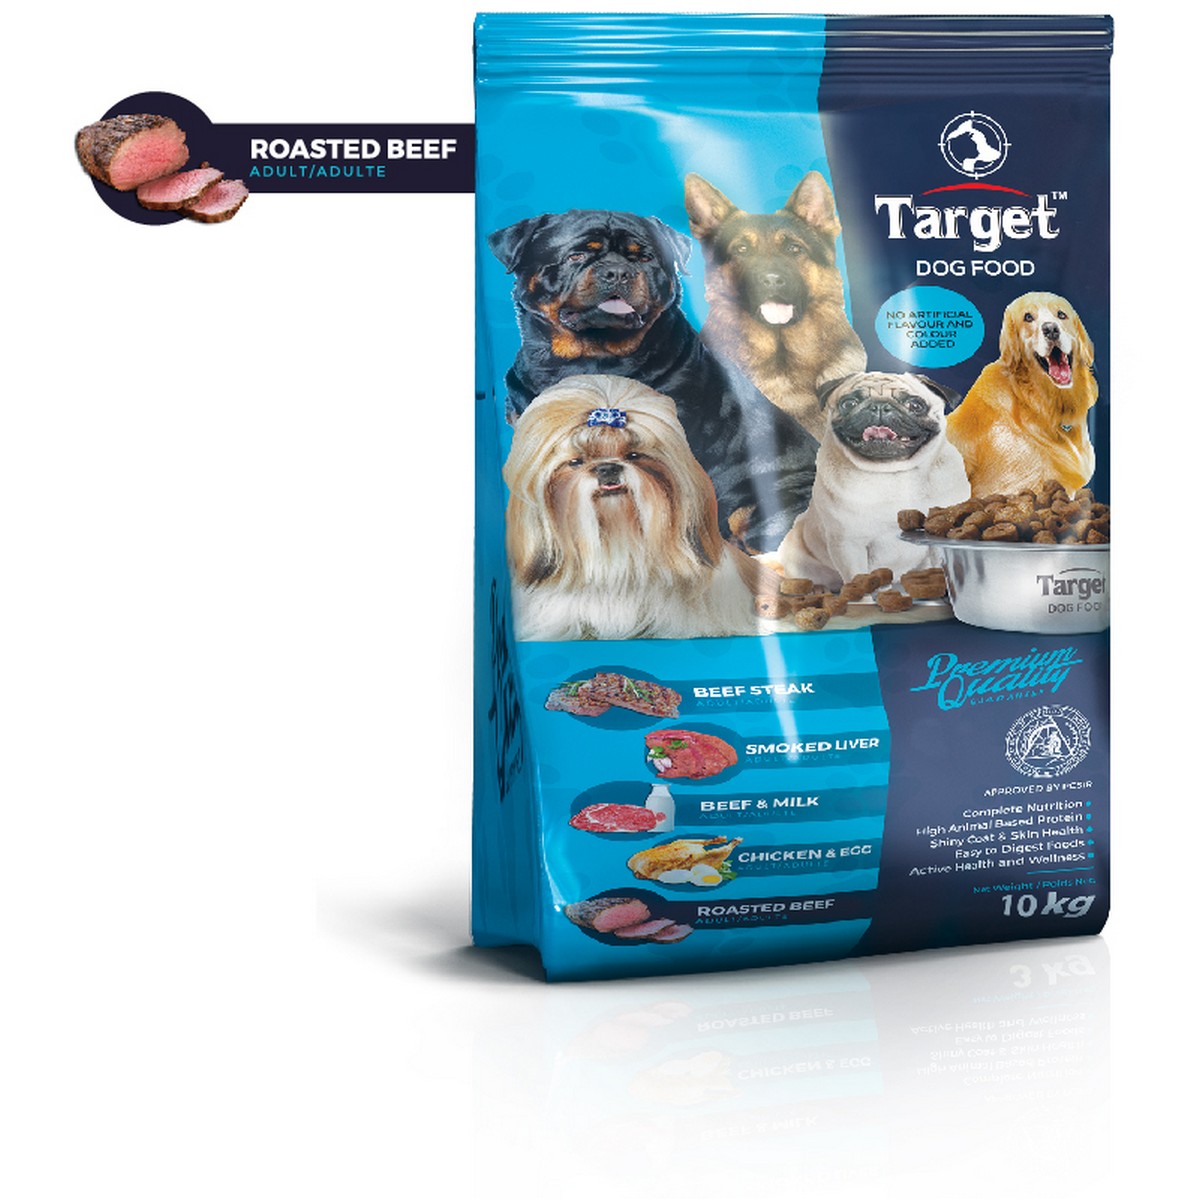 Target Dog Food - Roasted Beef - 10kg